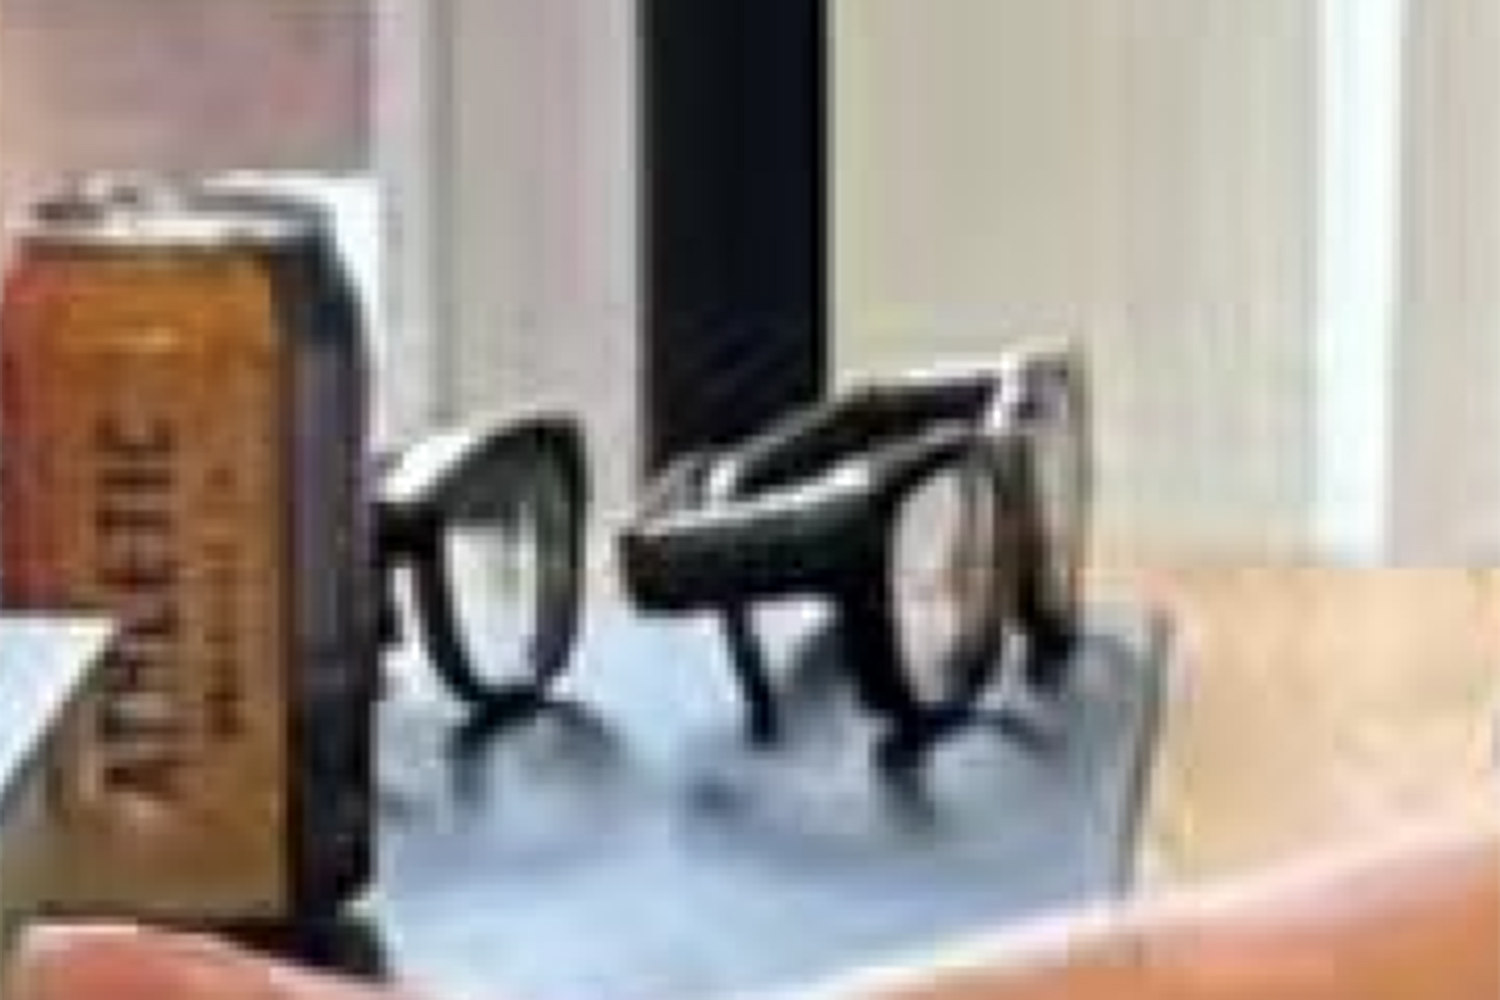 On pense que les lunettes sont un prototype de Meta "Orion" des lunettes de réalité augmentée, dont Zuckerberg promet bientôt d'autres mises à jour